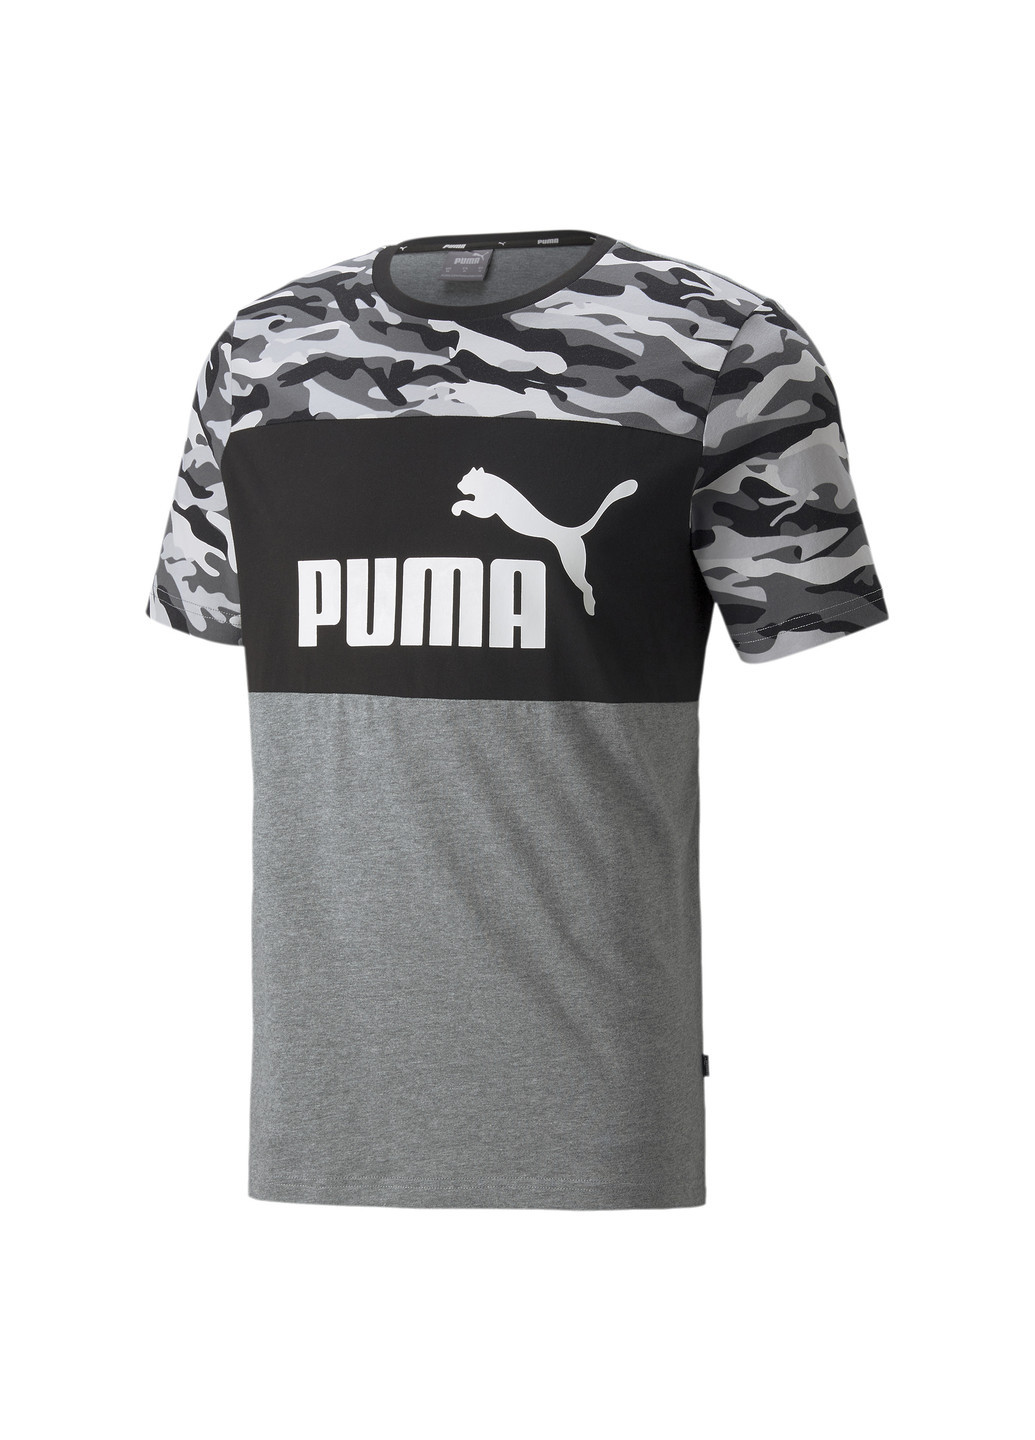 Черная футболка ess+ camo men’s tee Puma